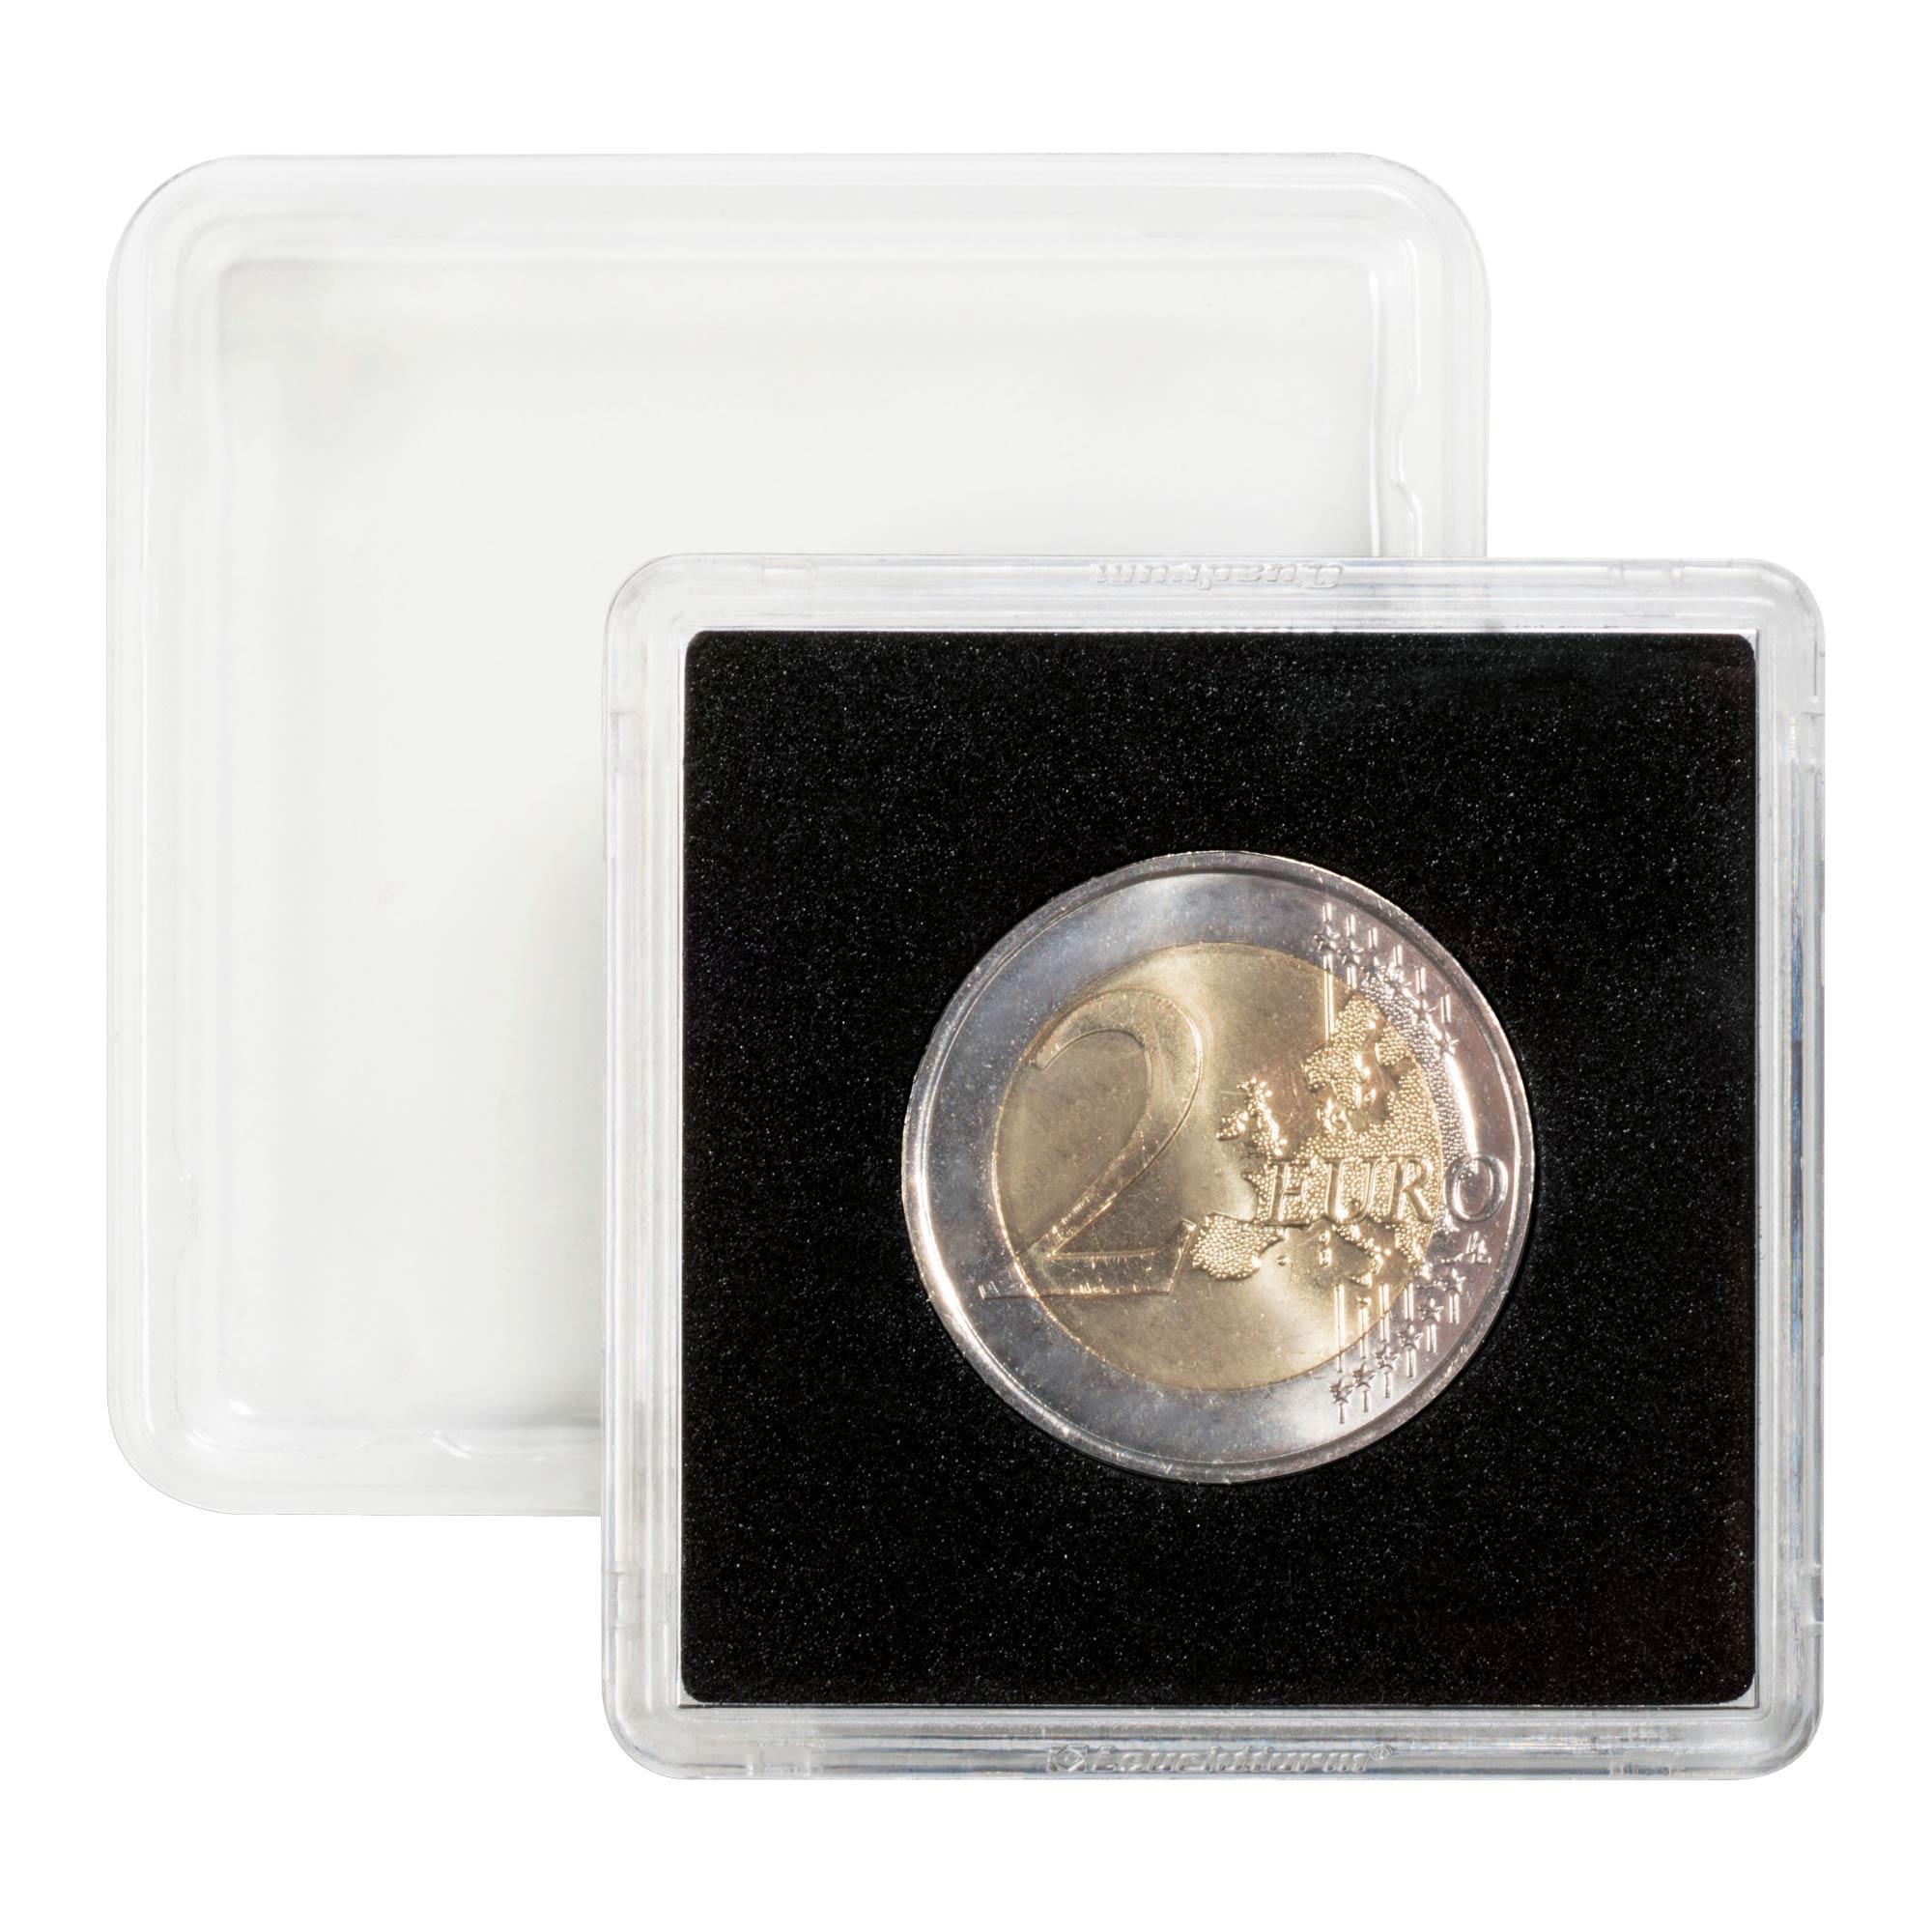 Quadrum Snap Self-adhesive holders - Fits Quadrum coin capsules (pack of 10)